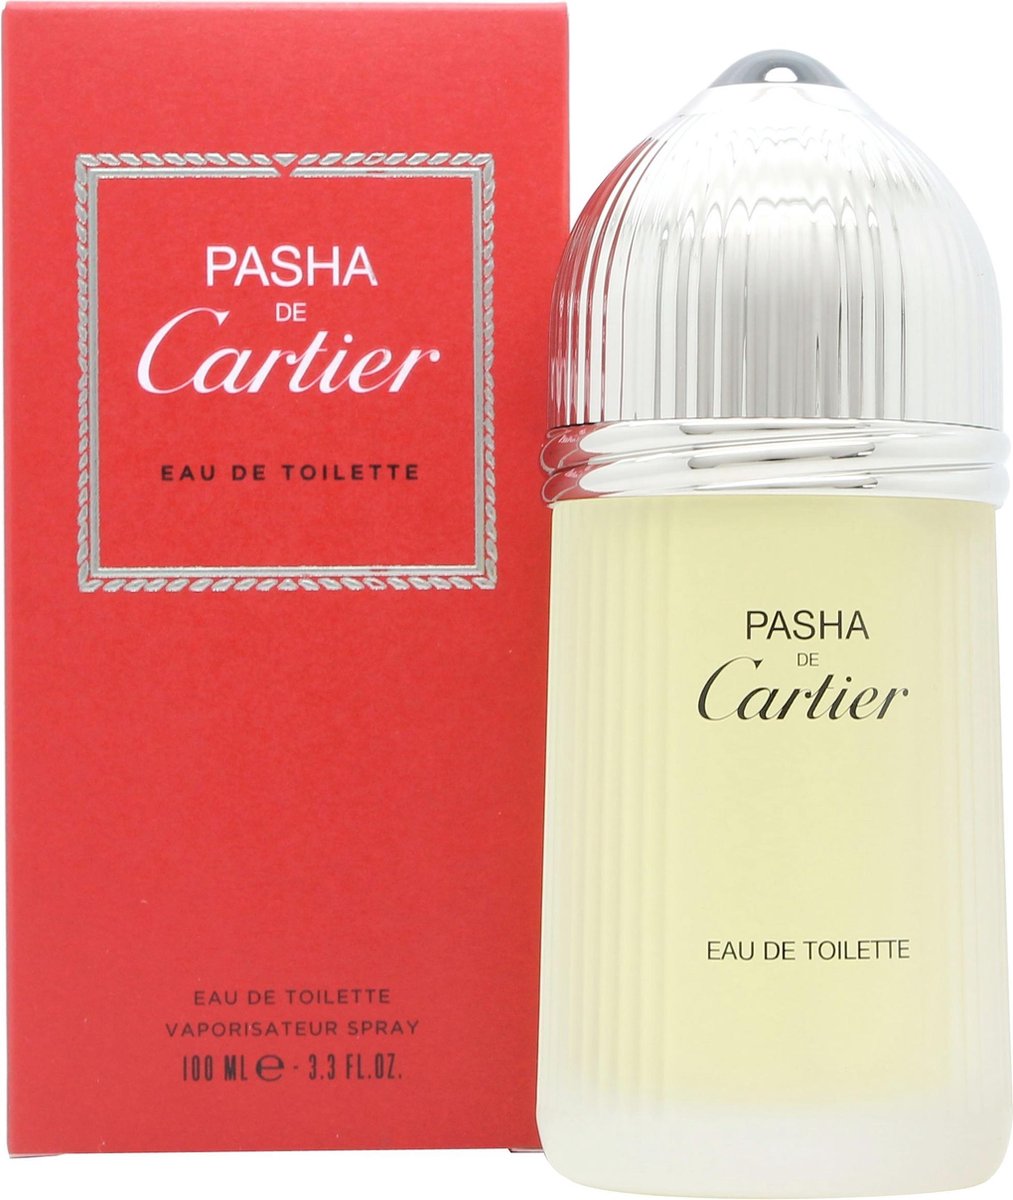 Cartier Pasha - 100 ml - Eau de toilette